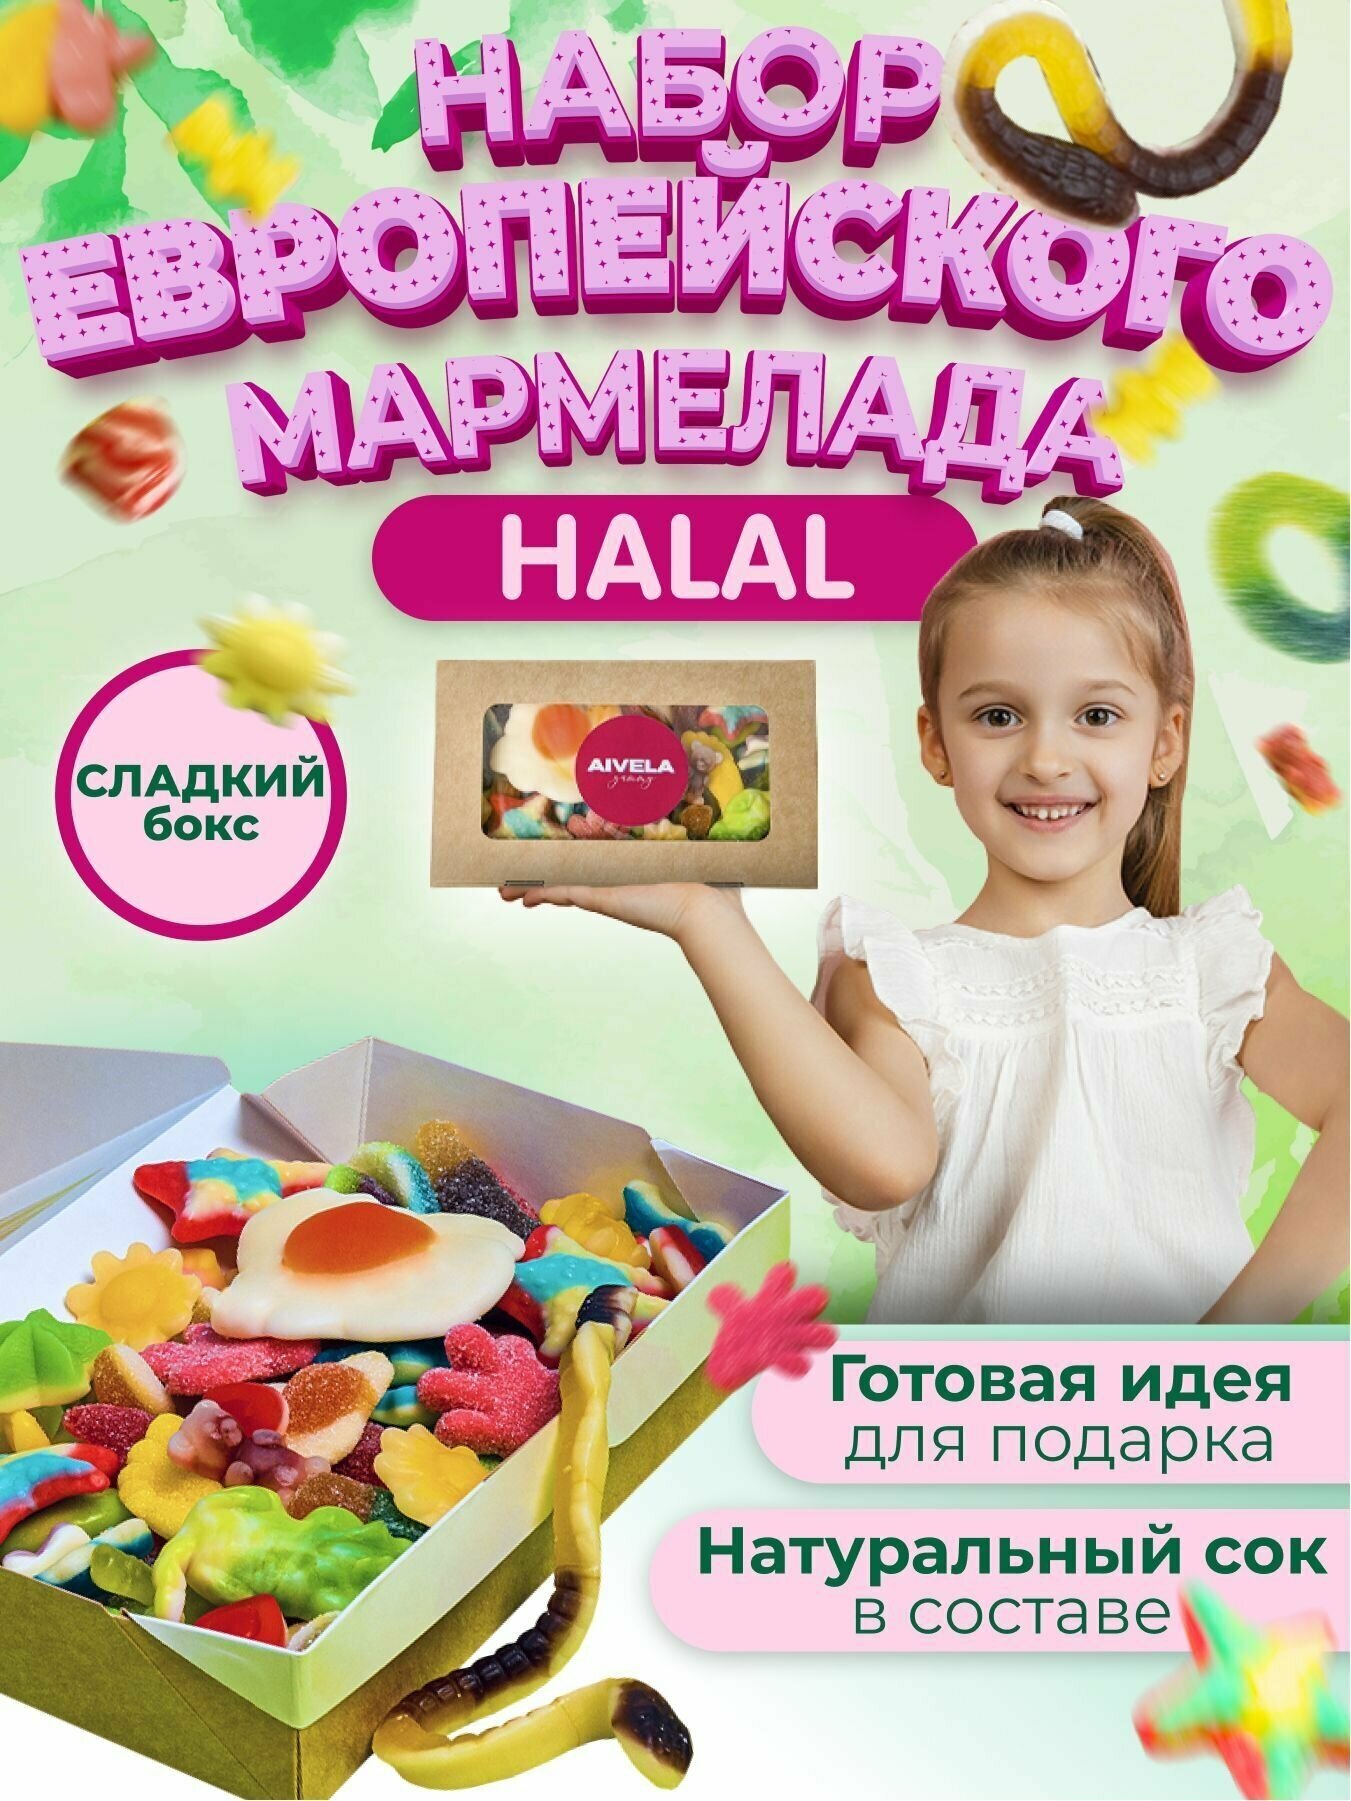 Европейский мармелад жевательный в коробке подарочный набор вкусняшек мармелад ассорти сладкий HALAL - фотография № 1